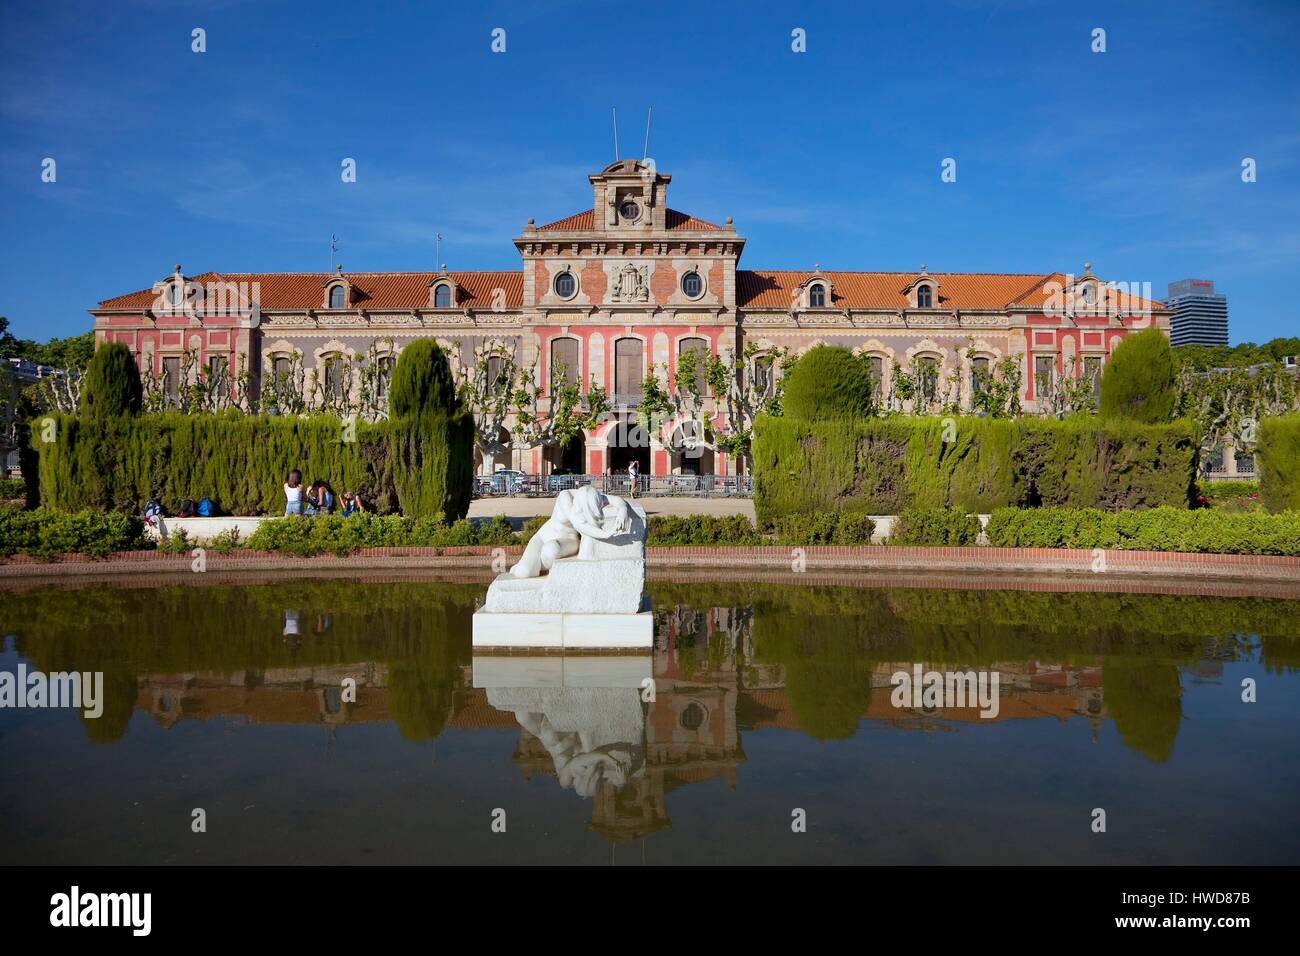 In Spagna, in Catalogna, Barcellona, Parc de la Ciutadella, la desolazione statua dopo scultore Josep Llimona in primo piano e il Parlamento della Catalogna in background Foto Stock